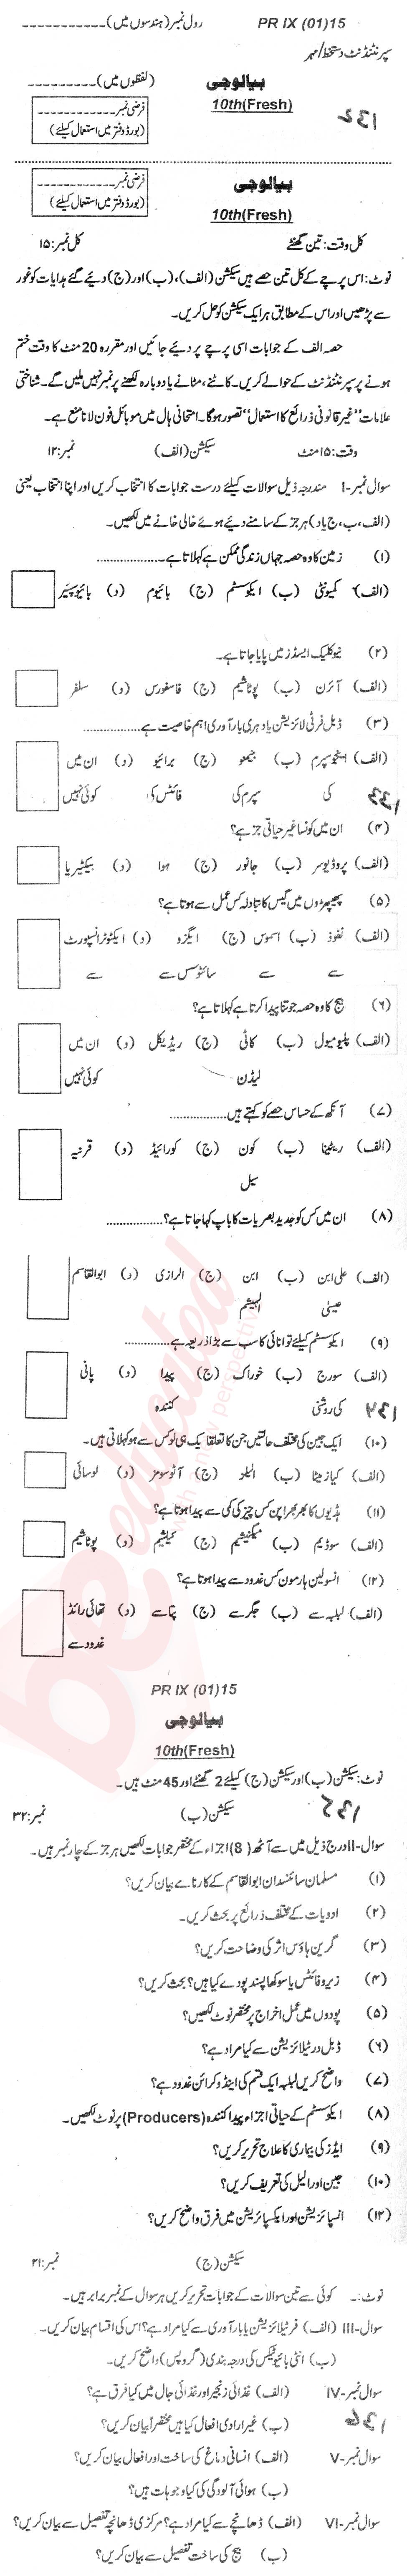 Biology 10th Urdu Medium Past Paper Group 1 BISE Kohat 2015